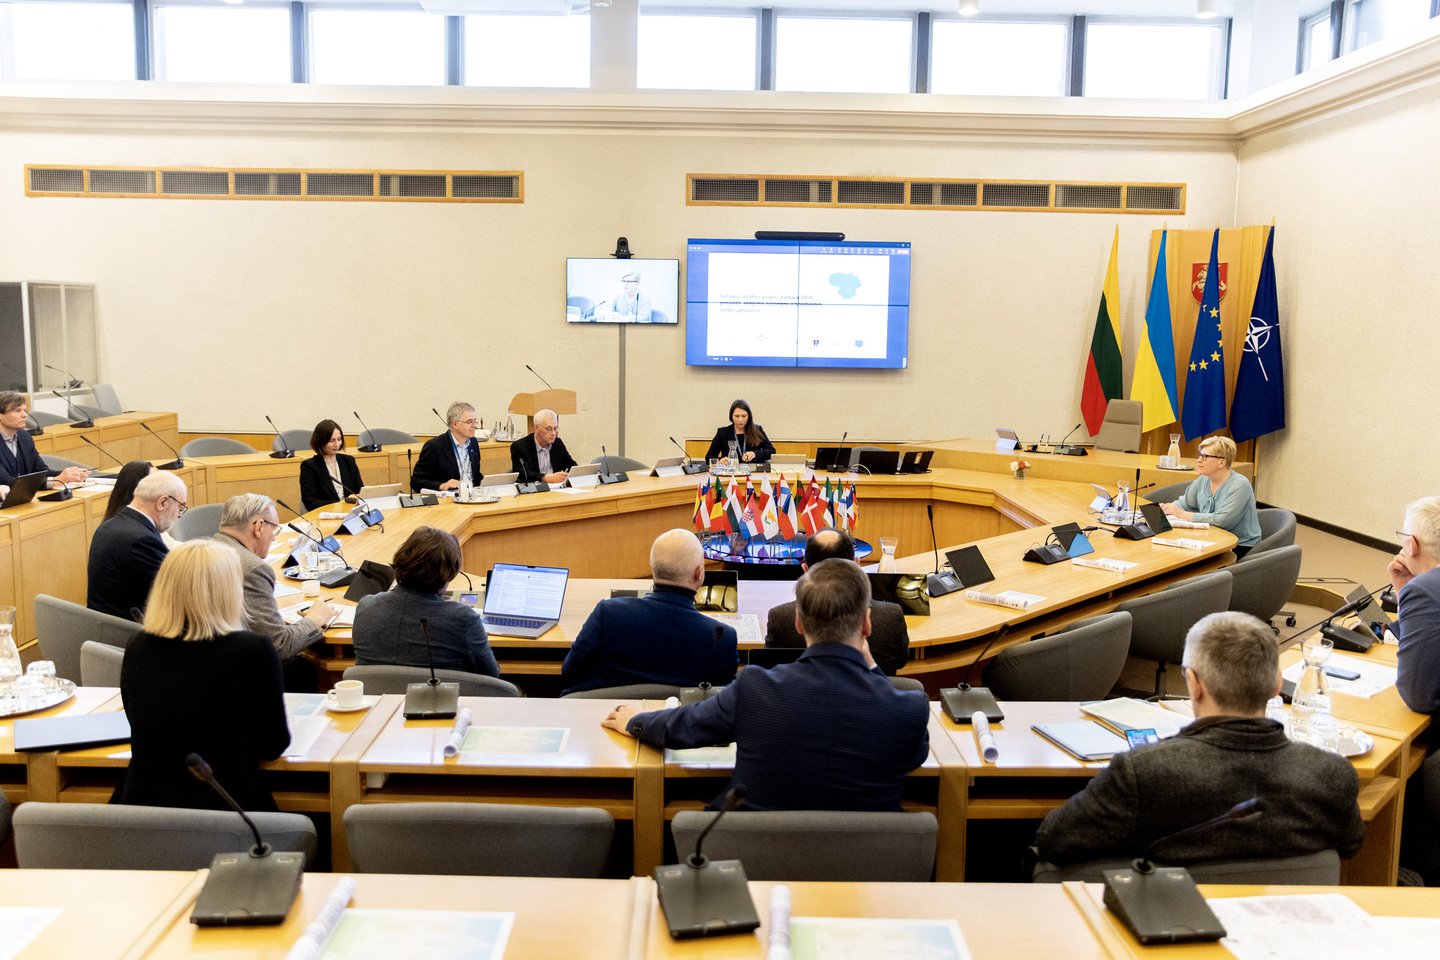  Trečiadienį posėdžiavusi Valstybės pažangos taryba iš esmės pritarė Lietuvos ateities vizijos „Lietuva 2050“ projektui ir uždegė žalią šviesą tolesniam jo derinimui su institucijomis ir visuomene.<br> L.Penek (LRVK) nuotr.